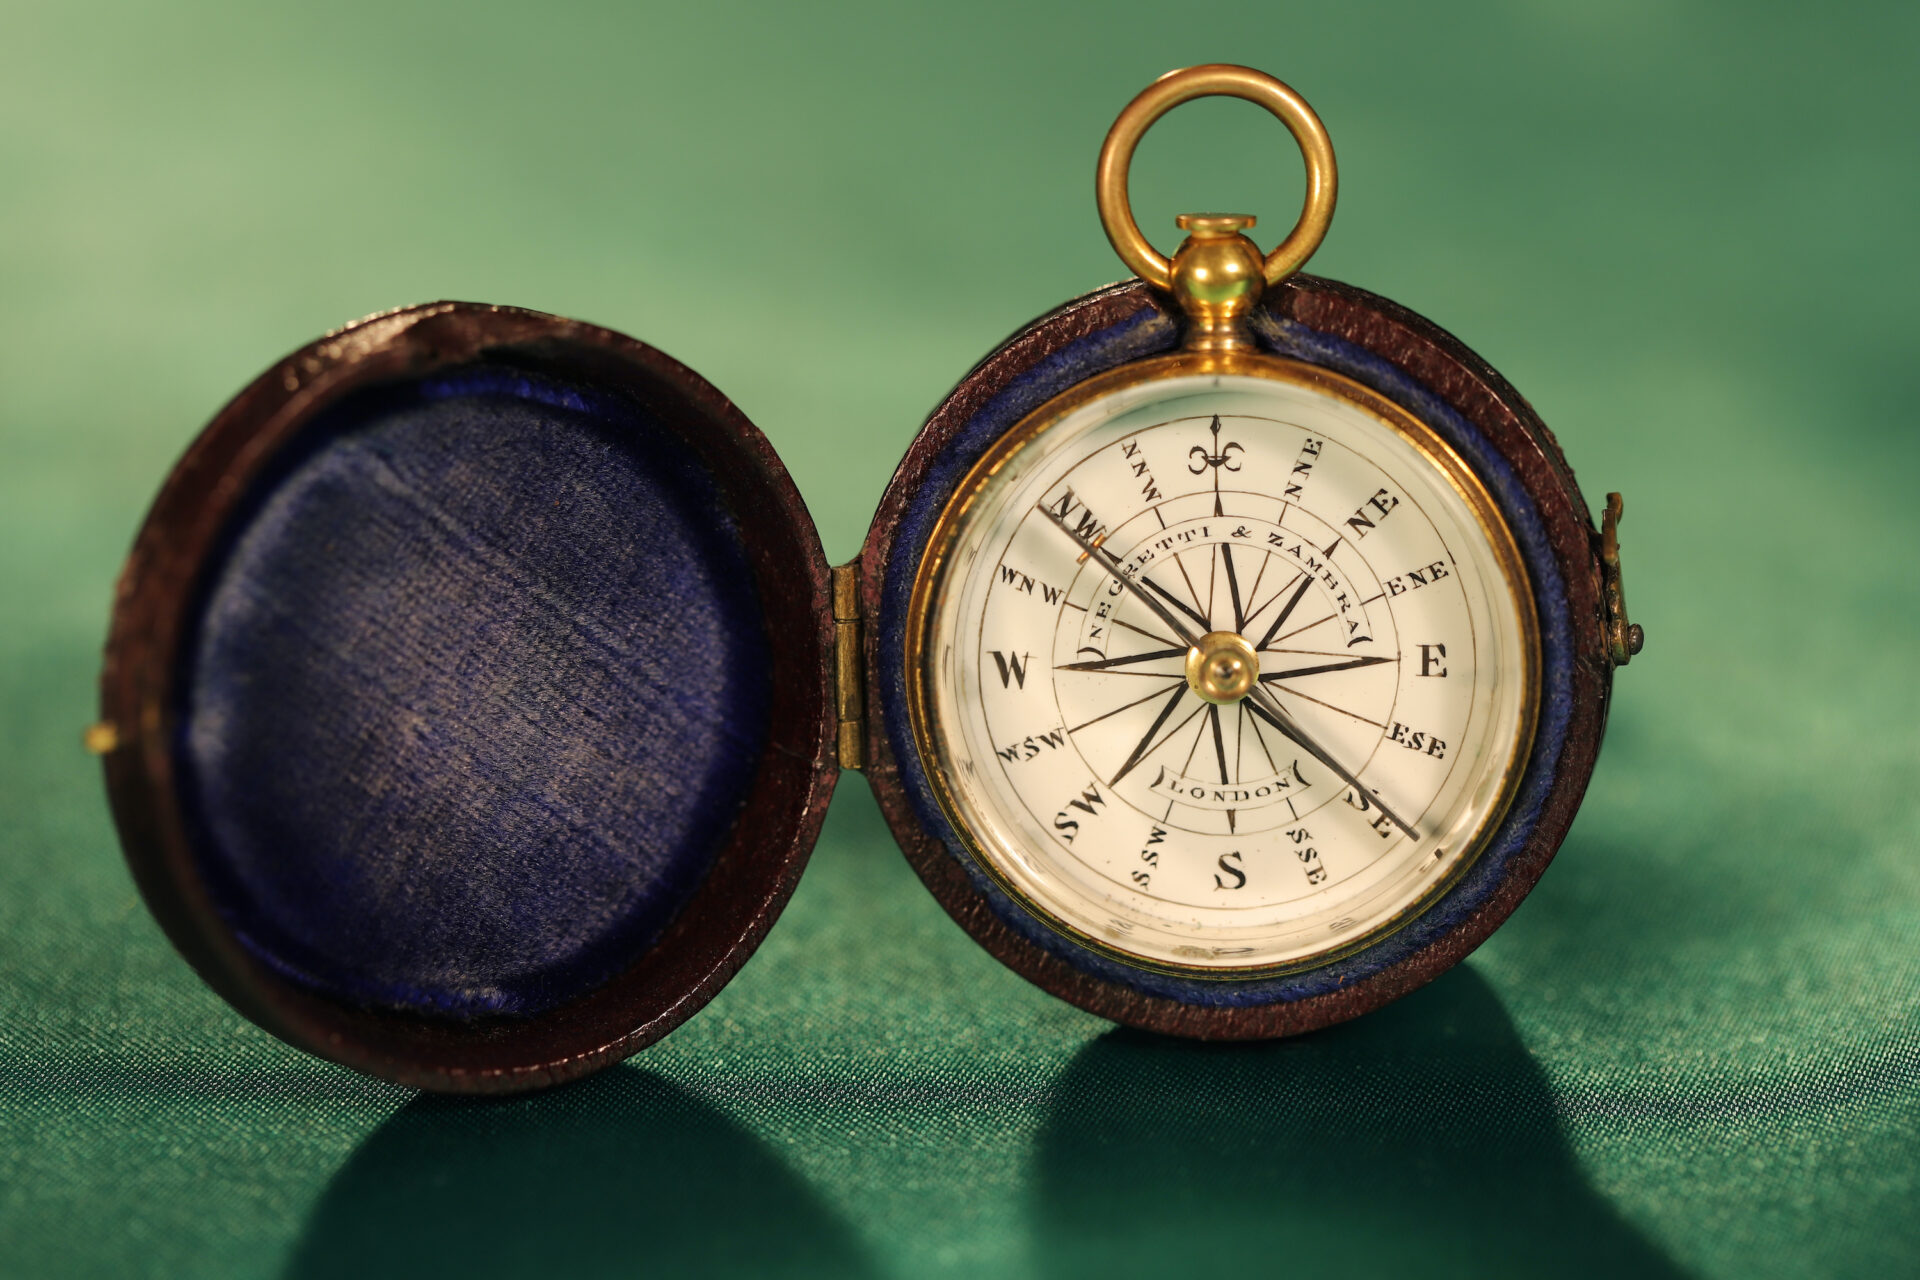 Brass Pocket Compass Antique Look